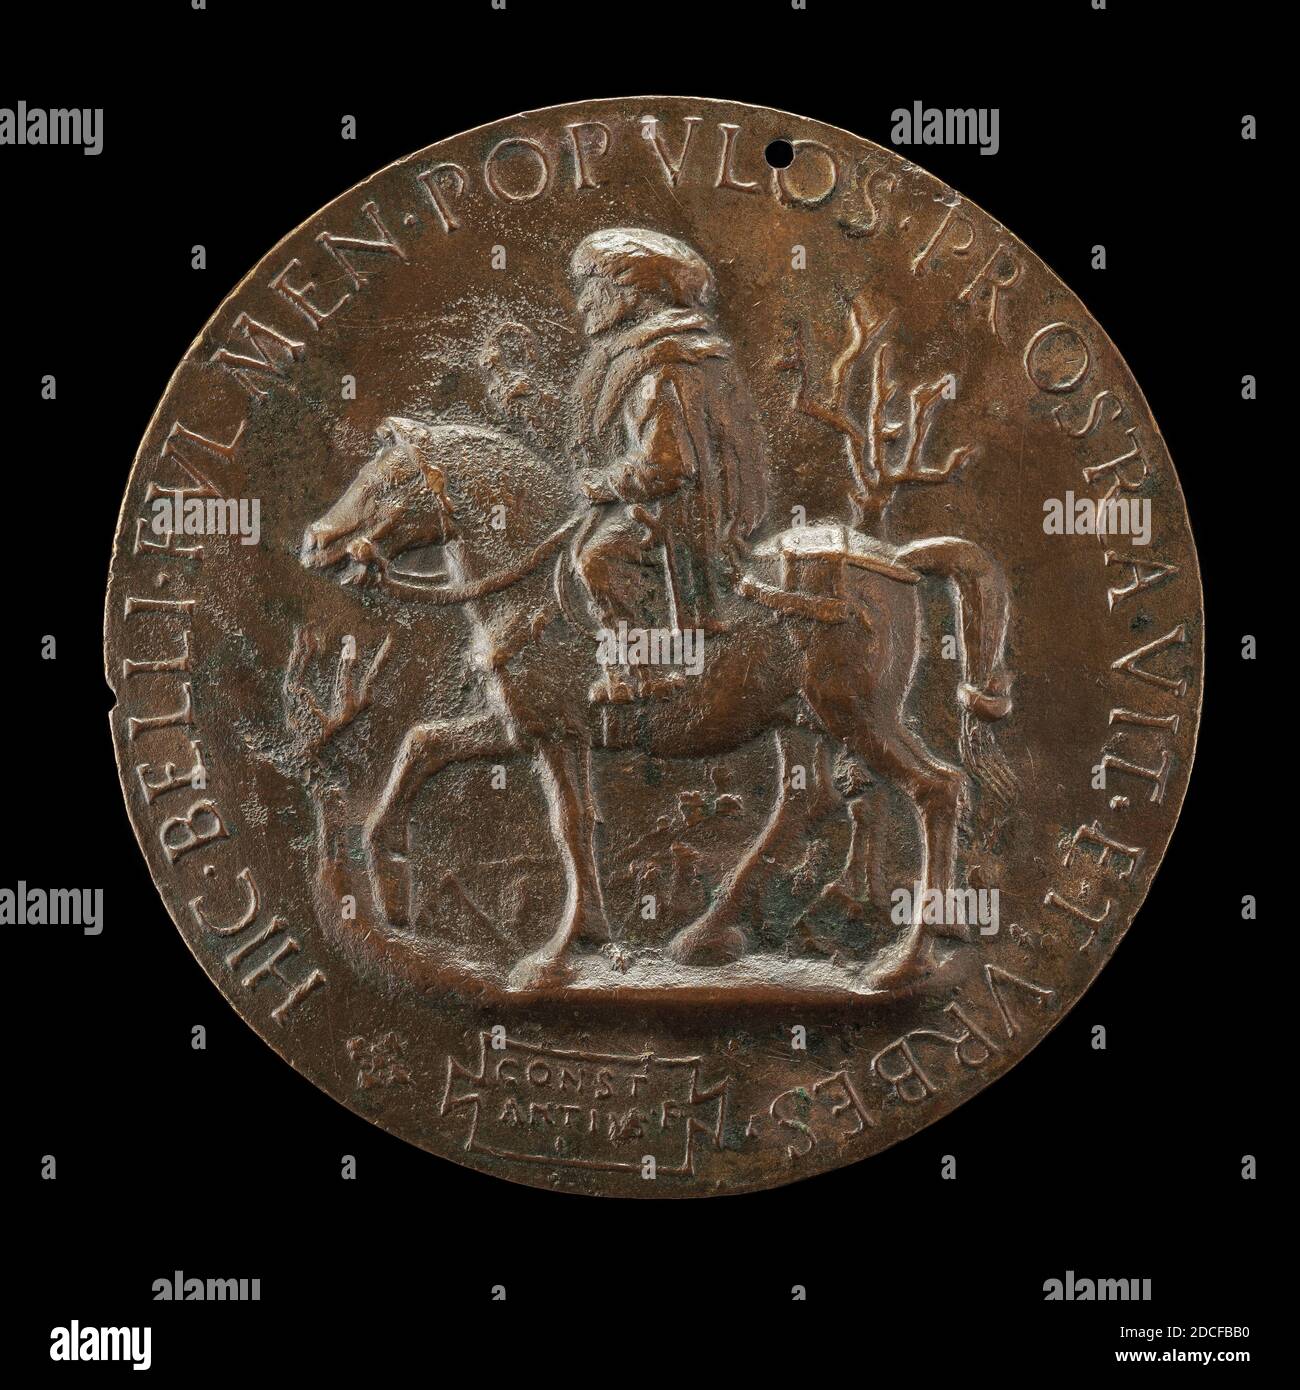 Costanzo da Ferrara, (medalista), napoletano, c. 1450 - morì dopo il 1524, il Sultano Riding, c.. 1481, bronzo, totale (diametro): 12.34 cm (4 7/8 in.), peso lordo: 445.3 gr (0.982 lb.), asse: 12:00 Foto Stock